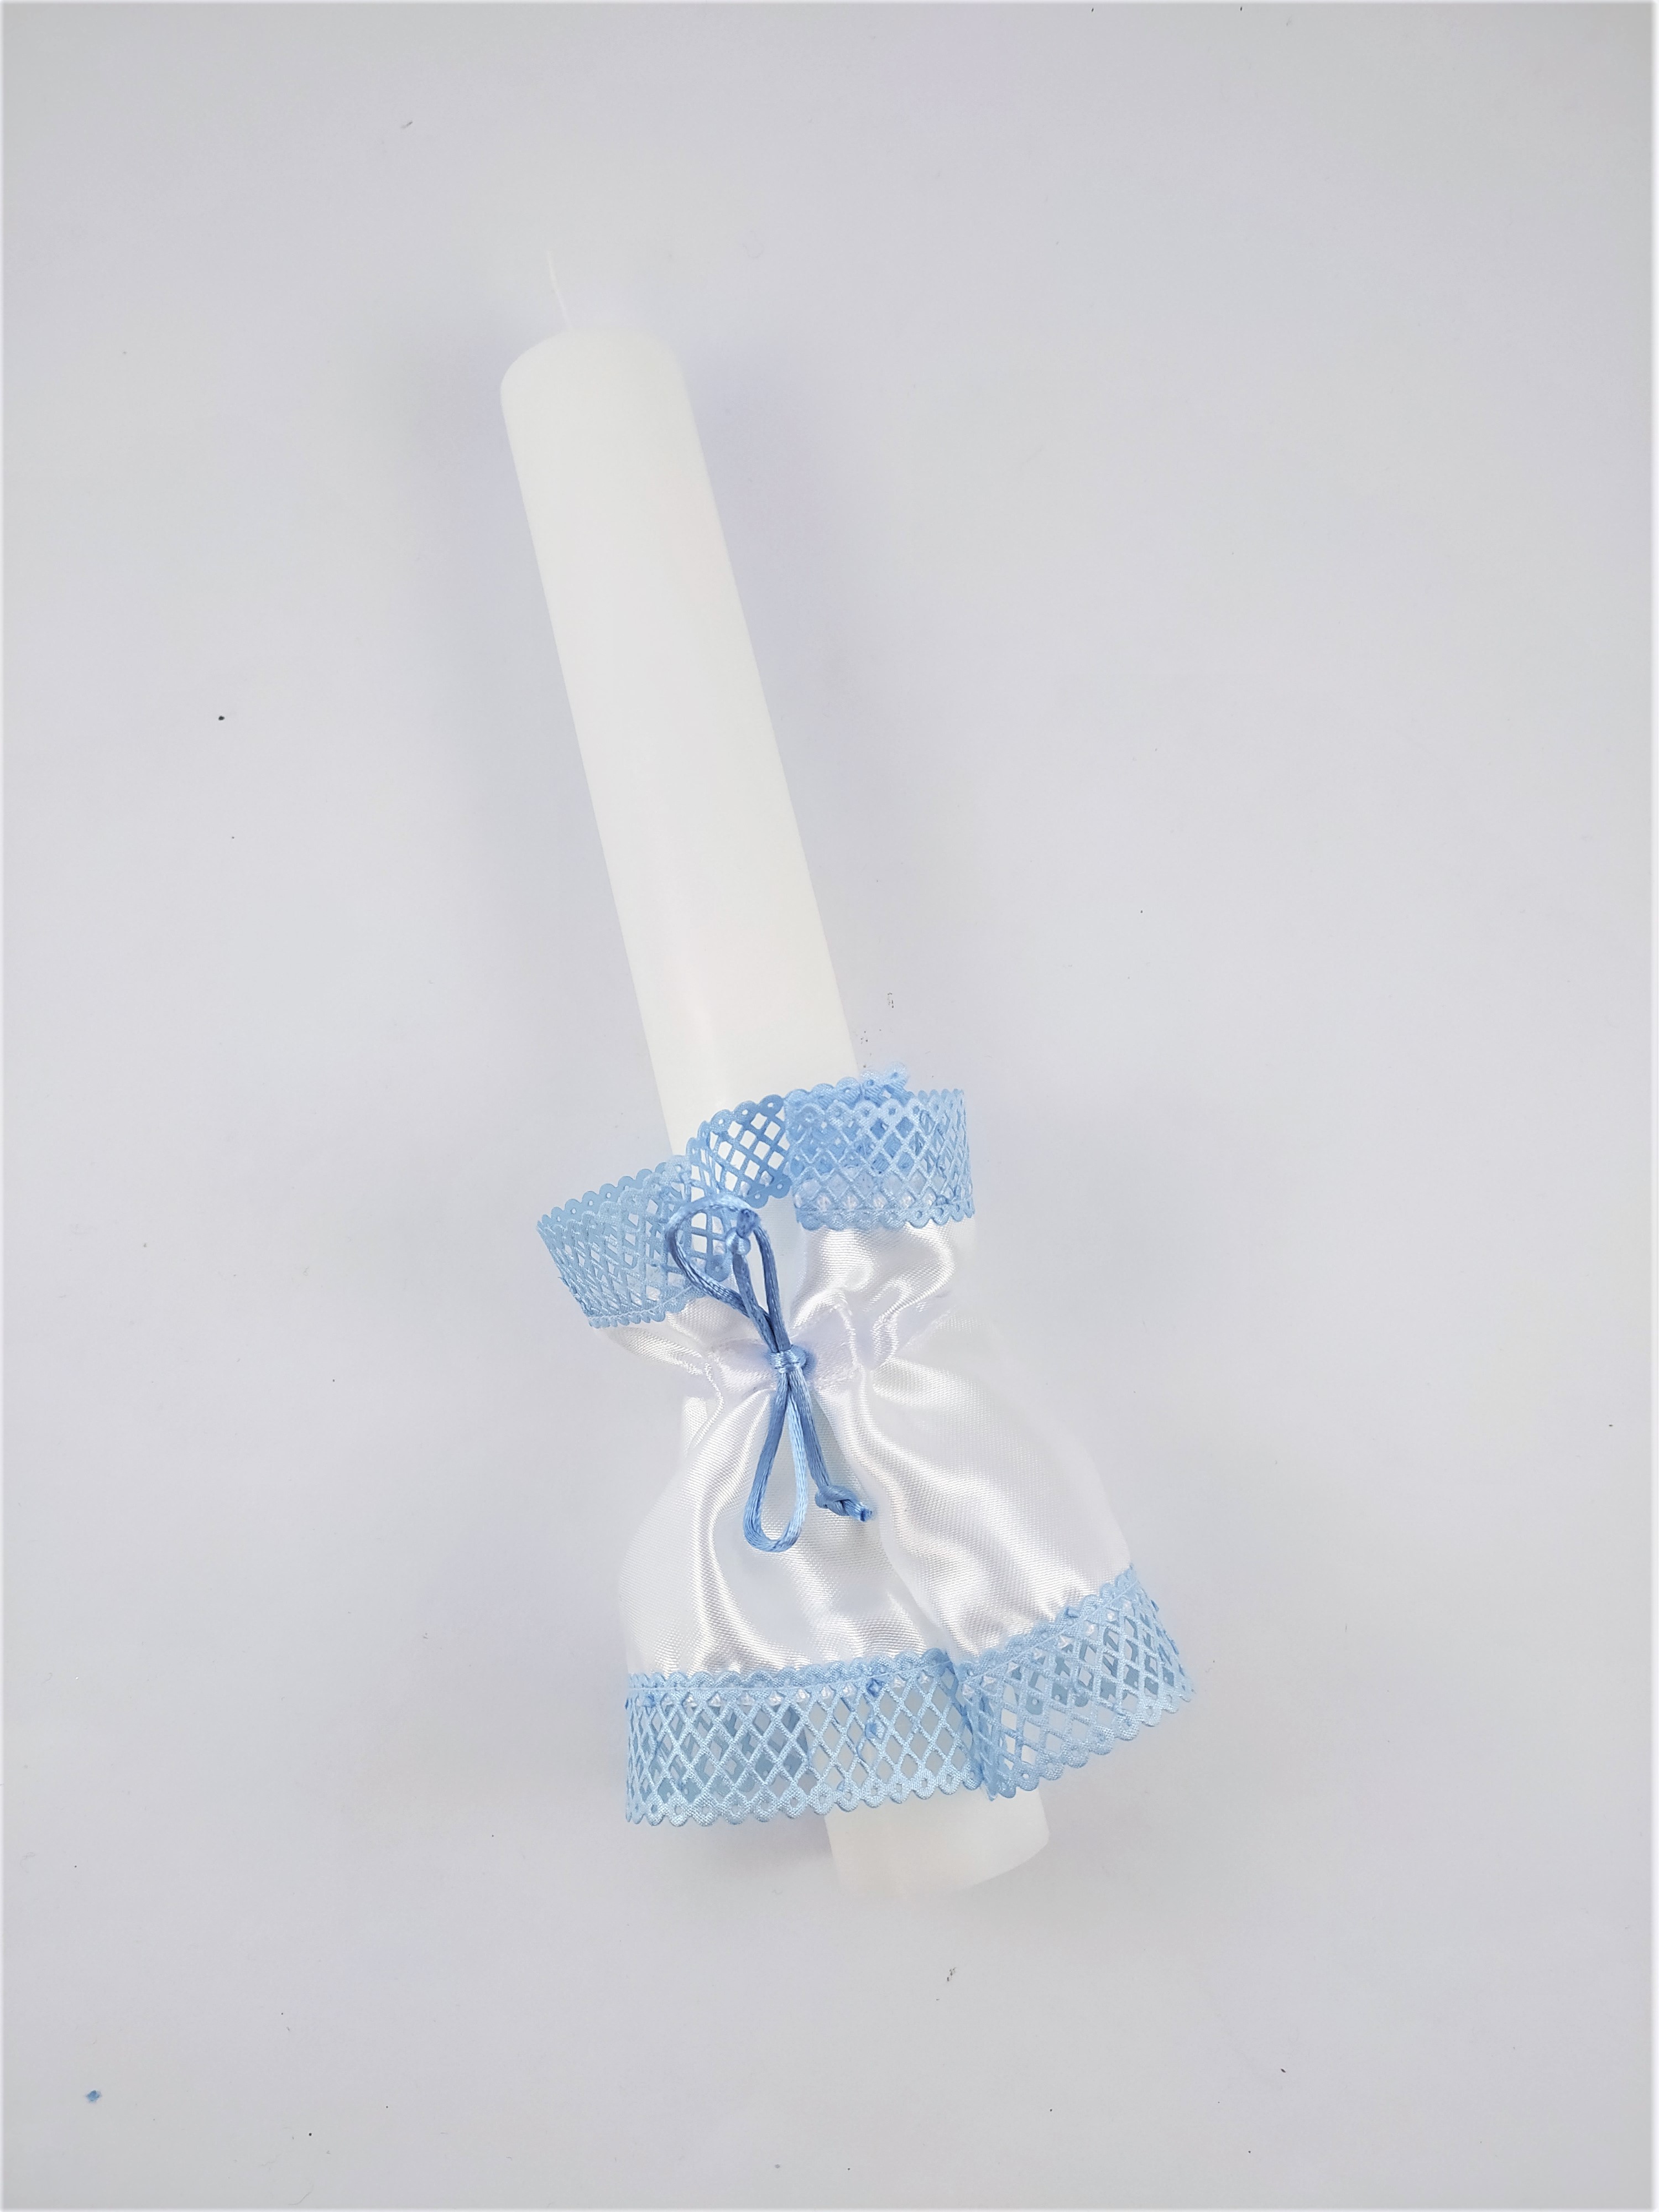 Chránítko proti skapávání vosku s modrou mřížkovou krajkou